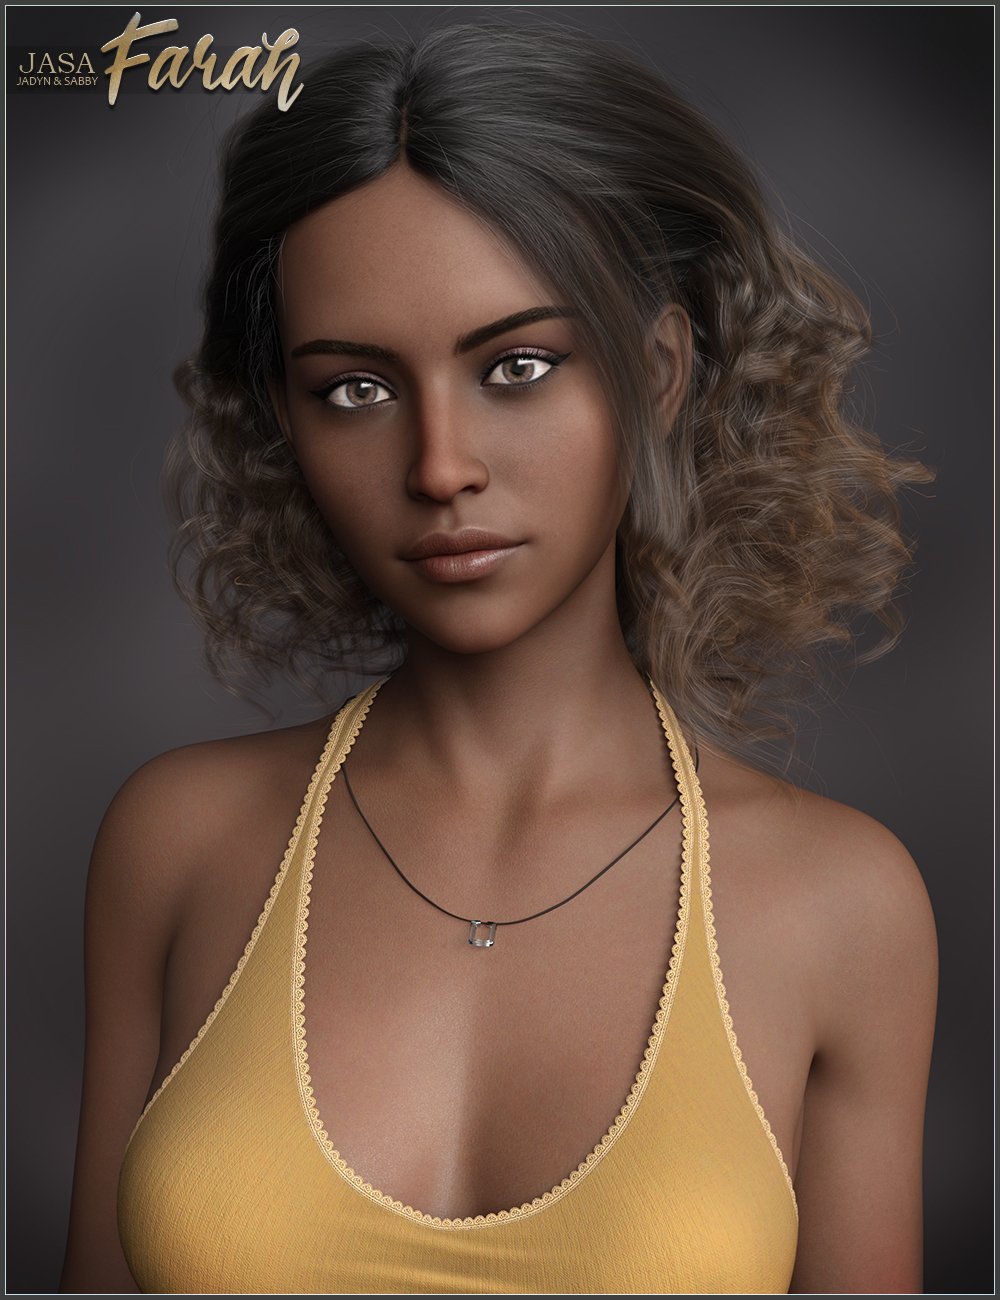 JASA Farah for Genesis 8 and 8.1 Female by: SabbyJadyn, 3D Models by Daz 3D